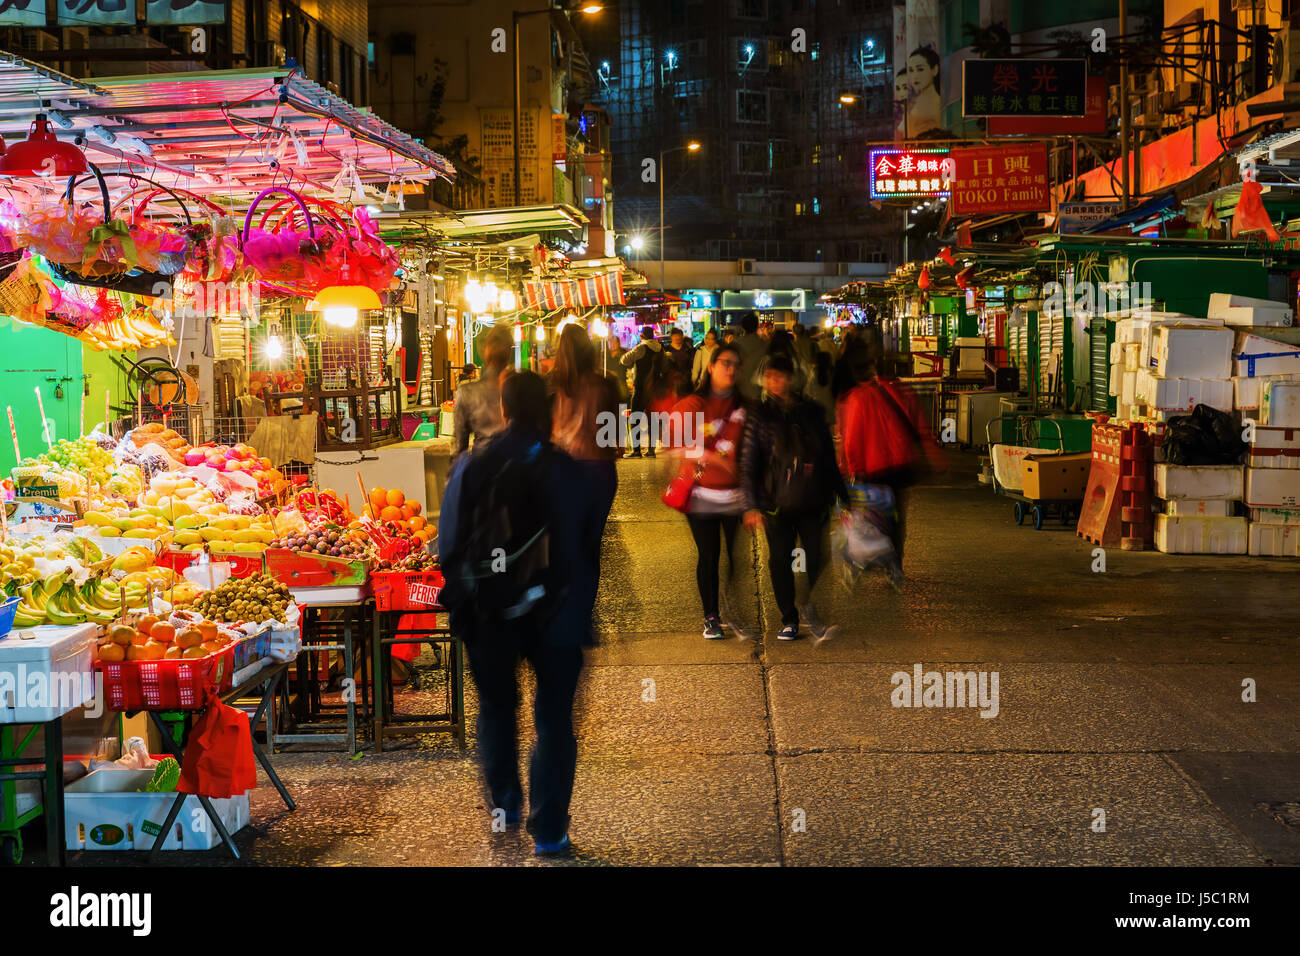 Hong Kong, Hong Kong - March 11, 2017: night market in Kowloon, Hong Kong, with unidentified people at night. Hong Kong ranks as the worlds 4th most d Stock Photo